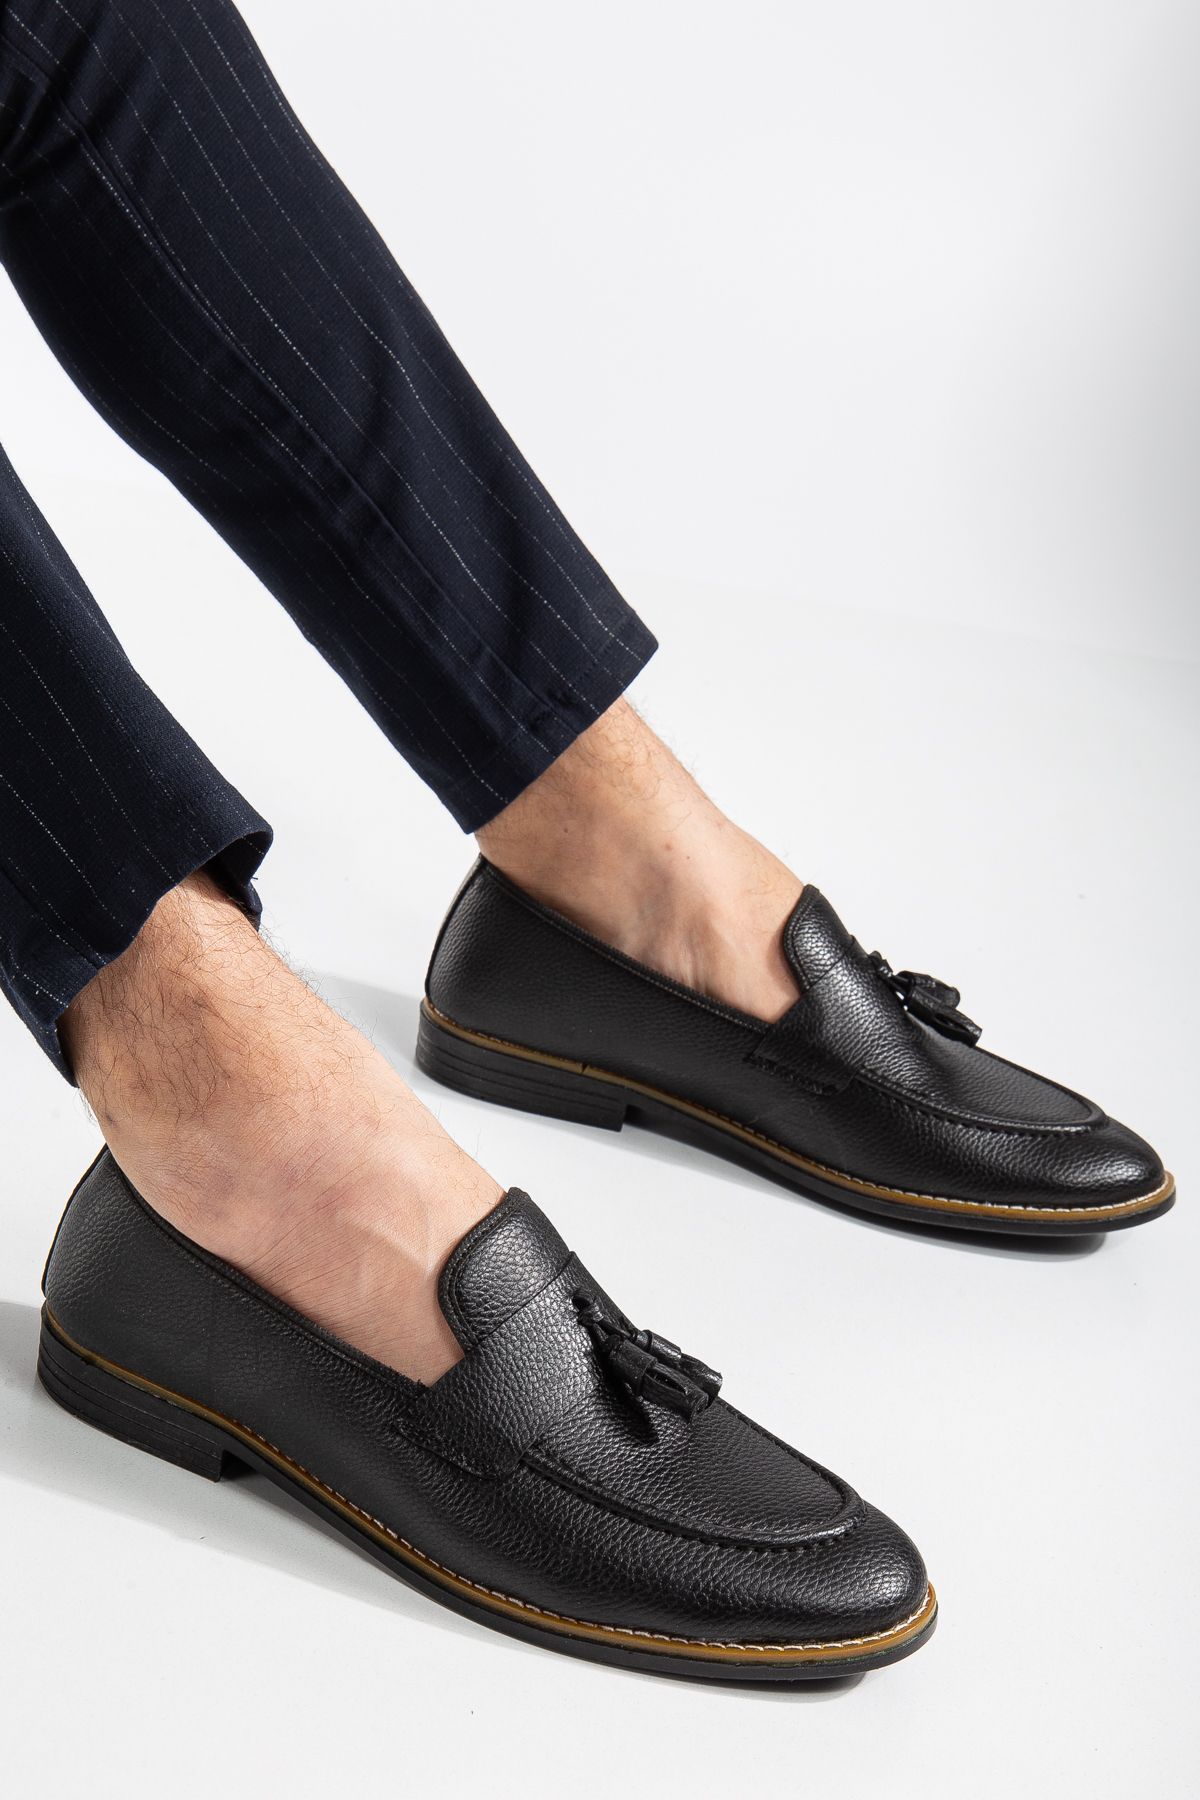 By Oxford Erkek Siyah Günlük Püsküllü Klasik Ayakkabı